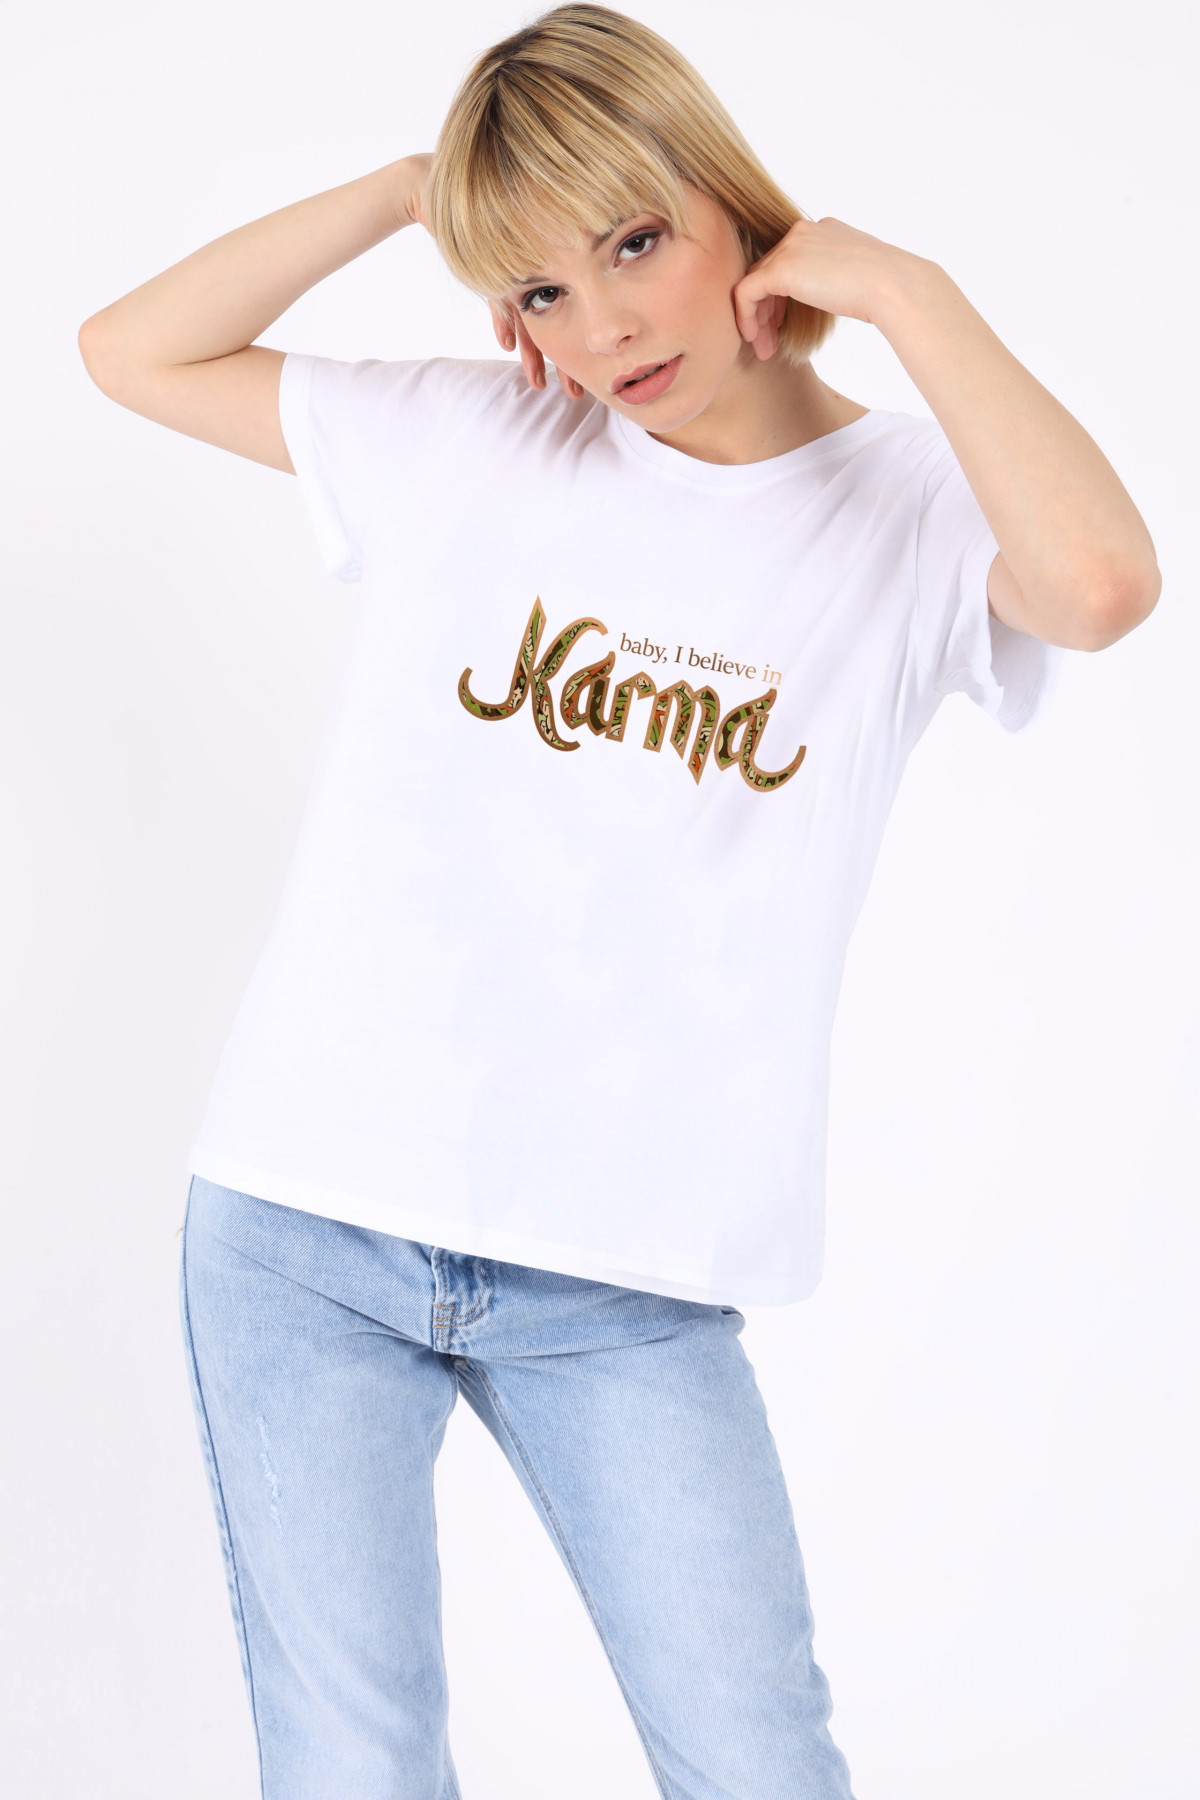 Karma-T-Shirt